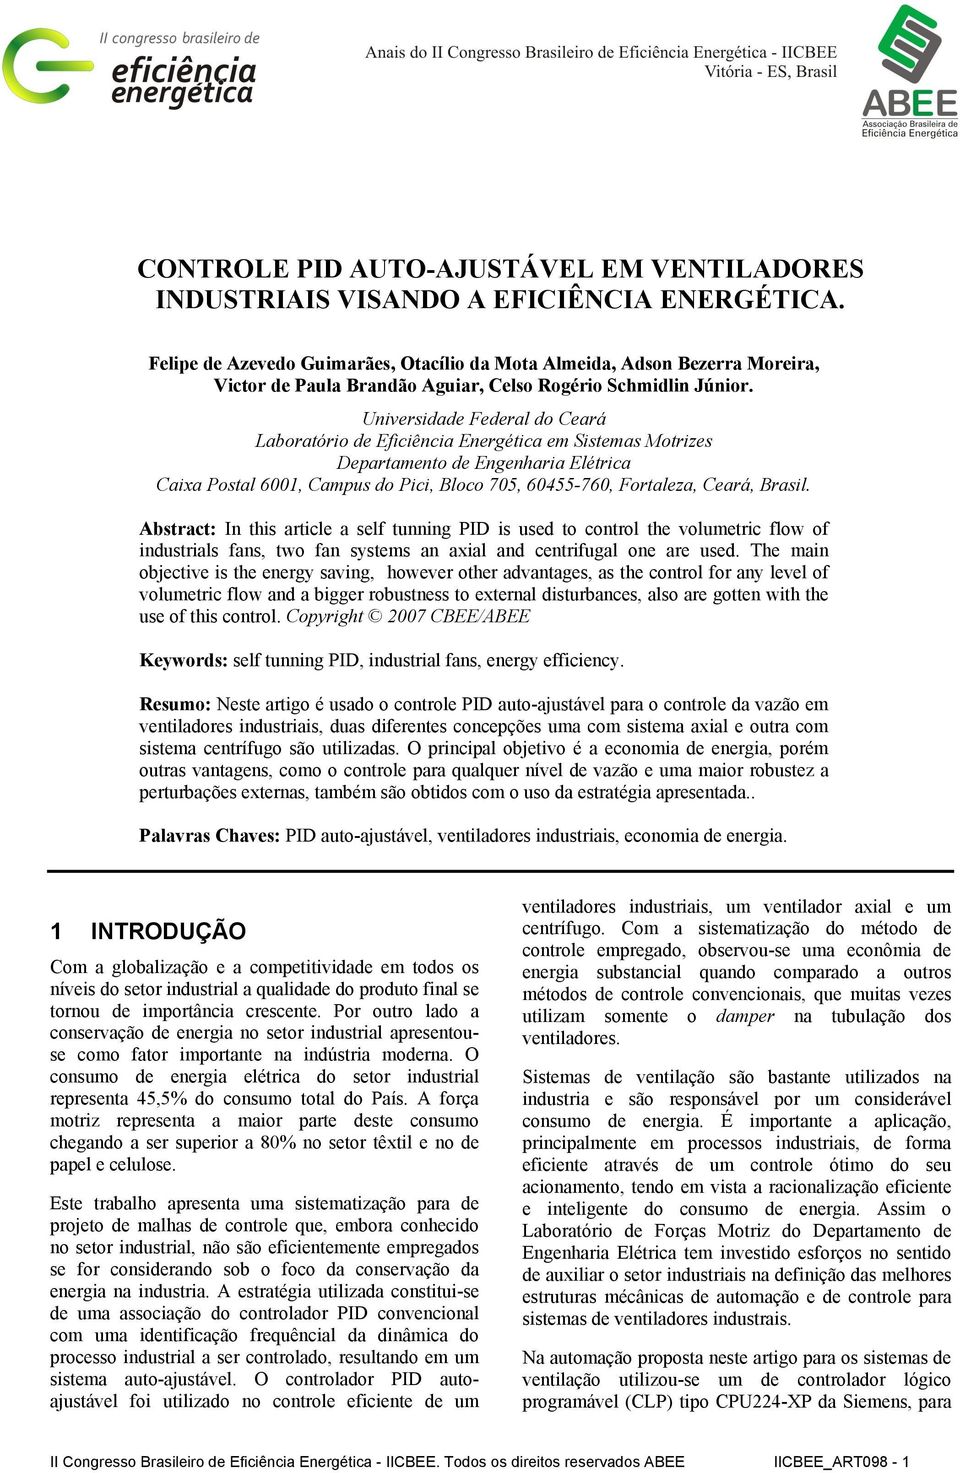 Univeridade Federal do Ceará Laboratório de Eficiência Energética em Sitema Motrize Deartamento de Engenharia Elétrica Caixa Potal 6001, Camu do Pici, Bloco 705, 60455-760, Fortaleza, Ceará, Brail.